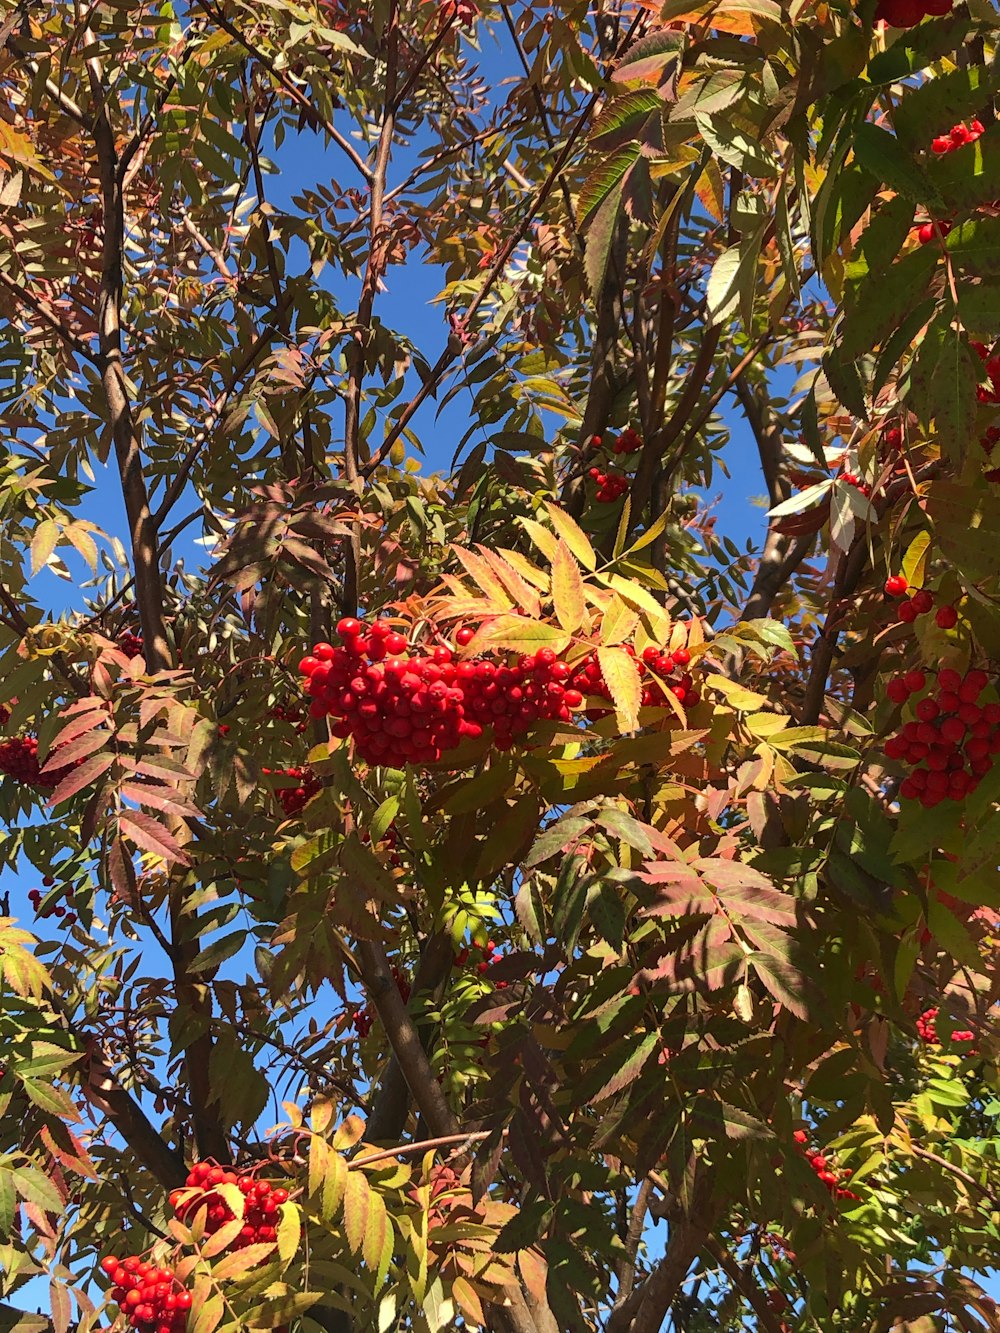 青空の下、赤い実がたくさん実った木